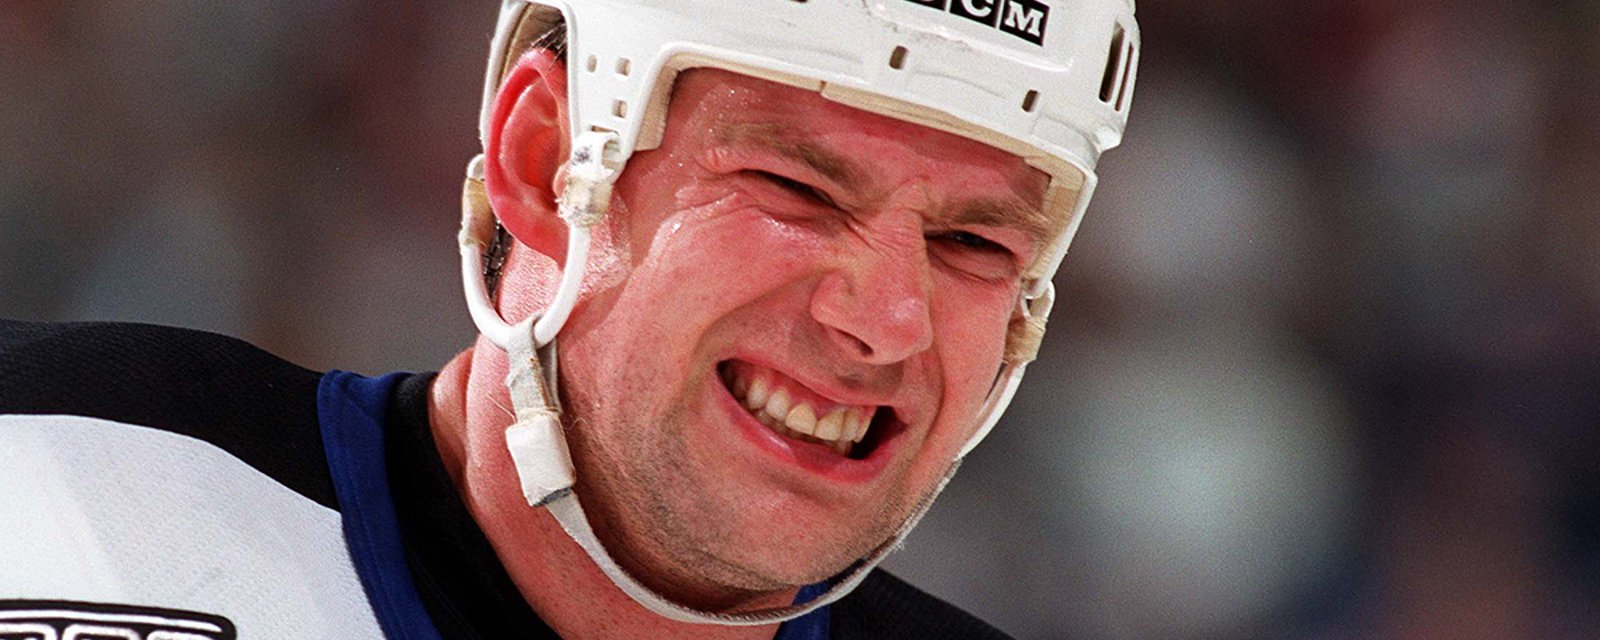 Former NHLer Simpson makes shocking steroid allegations